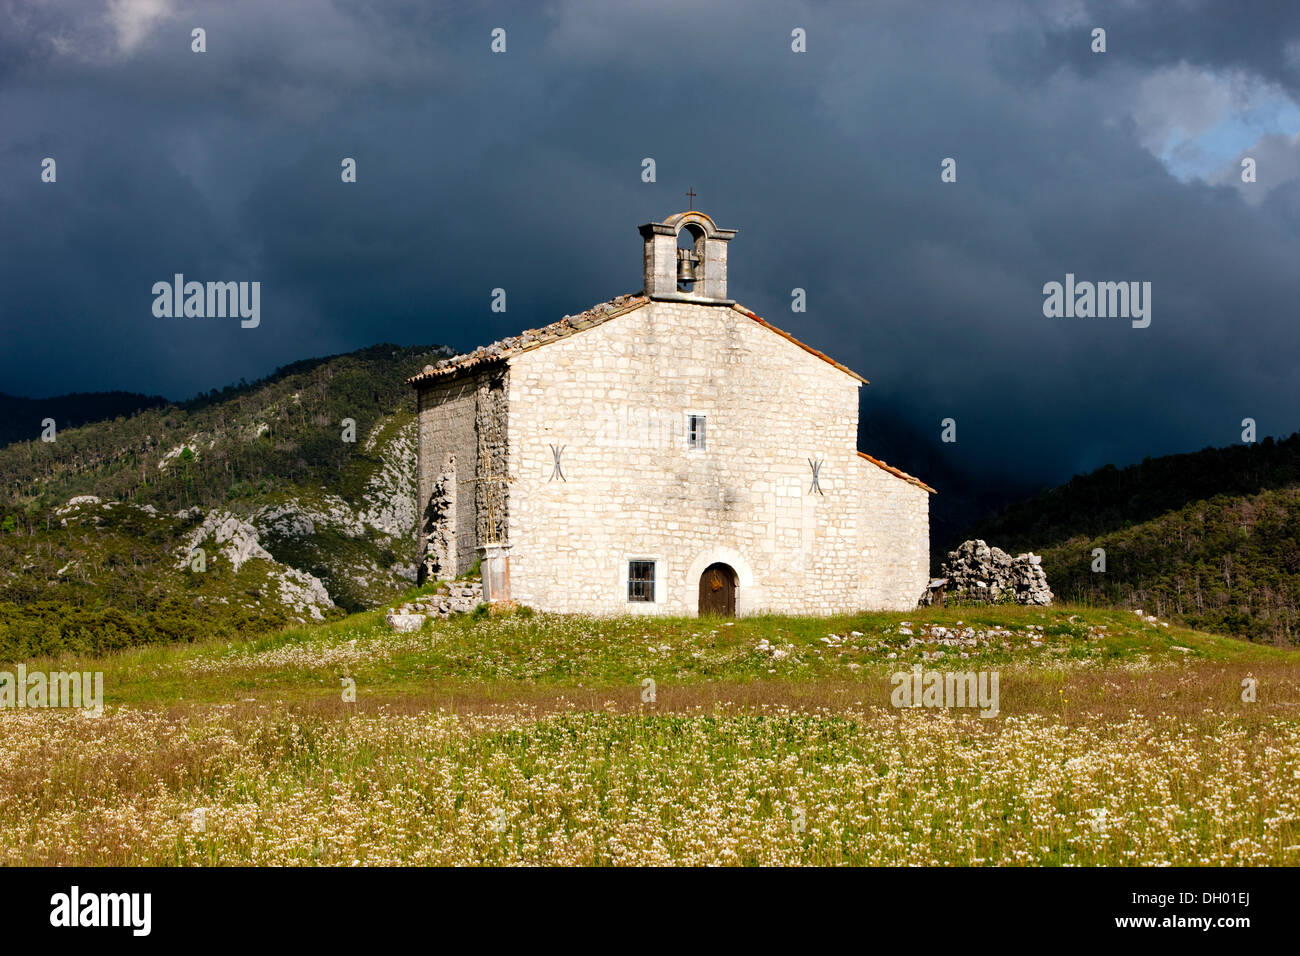 L'humeur orageuse, chapelle en Provence, Alpes de Haute Provence, France Banque D'Images